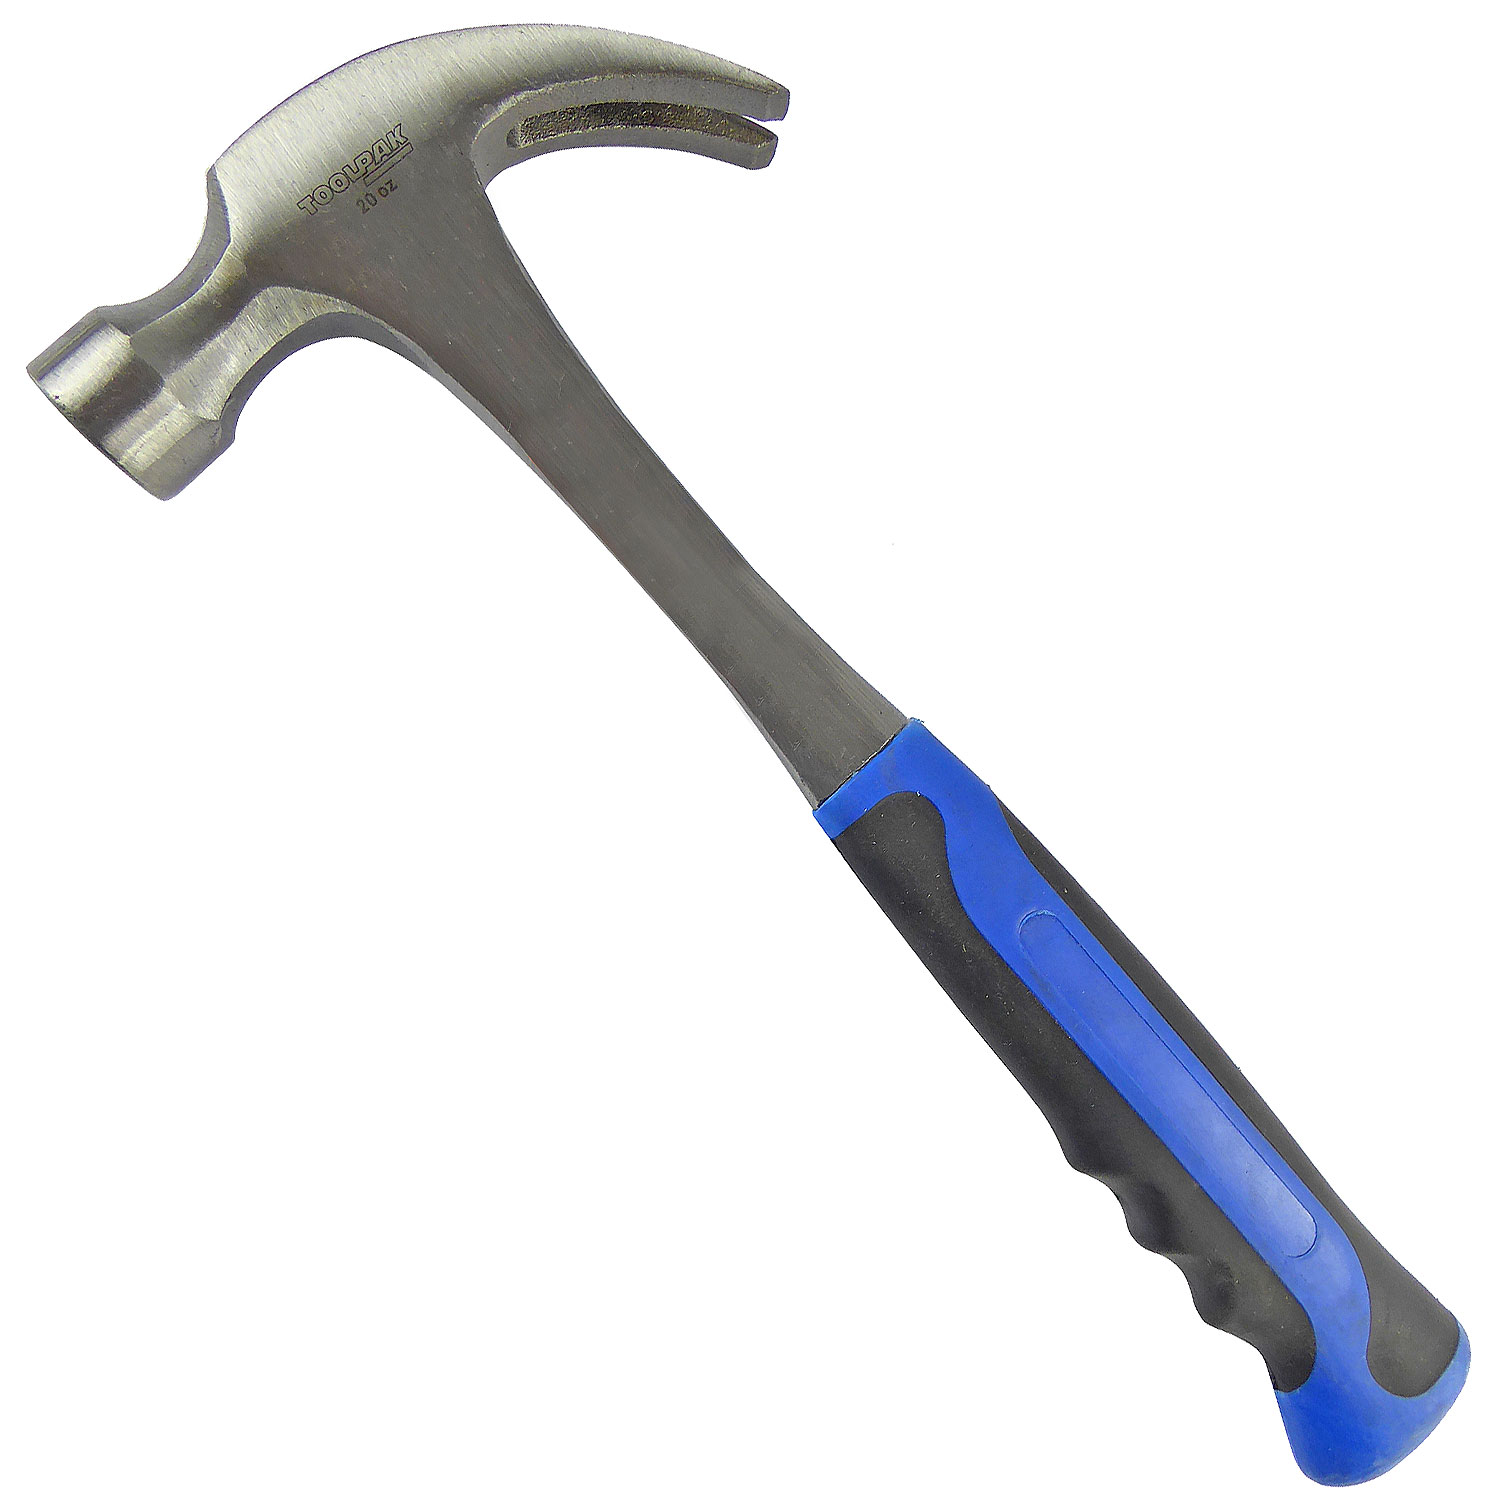 20oz Forged Steel Claw Hammer